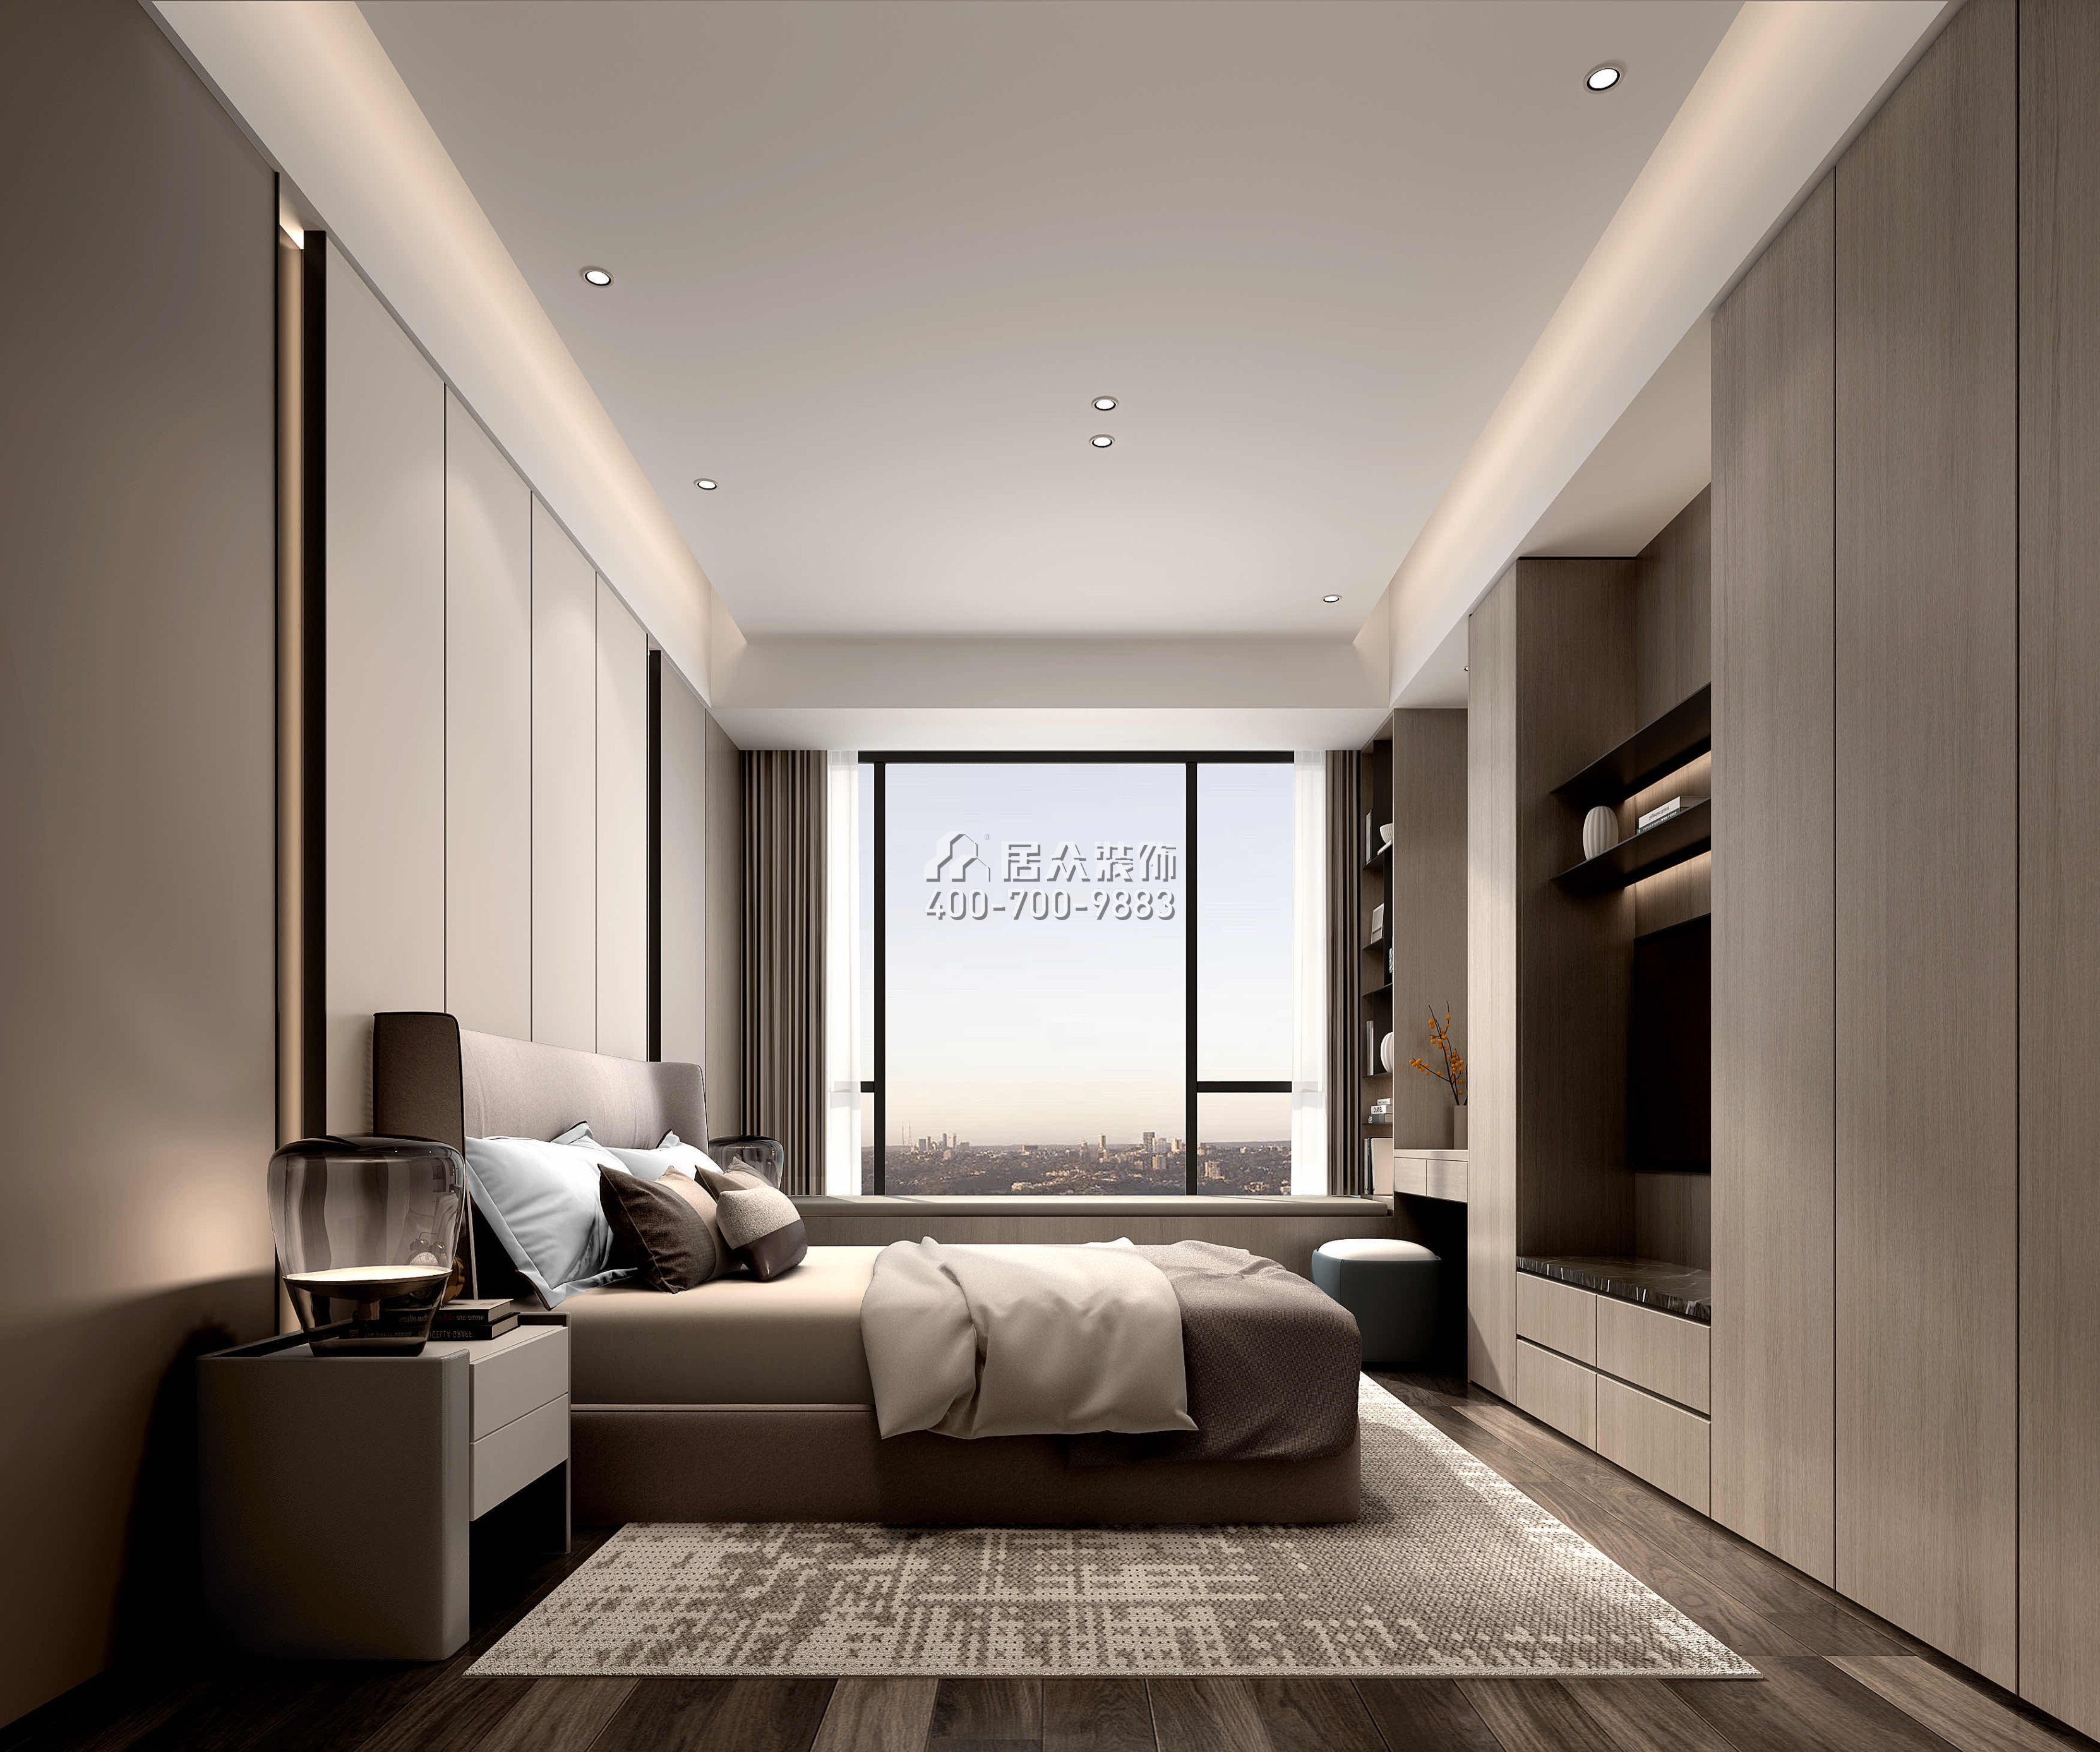 嘉華星際灣238平方米現代簡約風格平層戶型臥室裝修效果圖